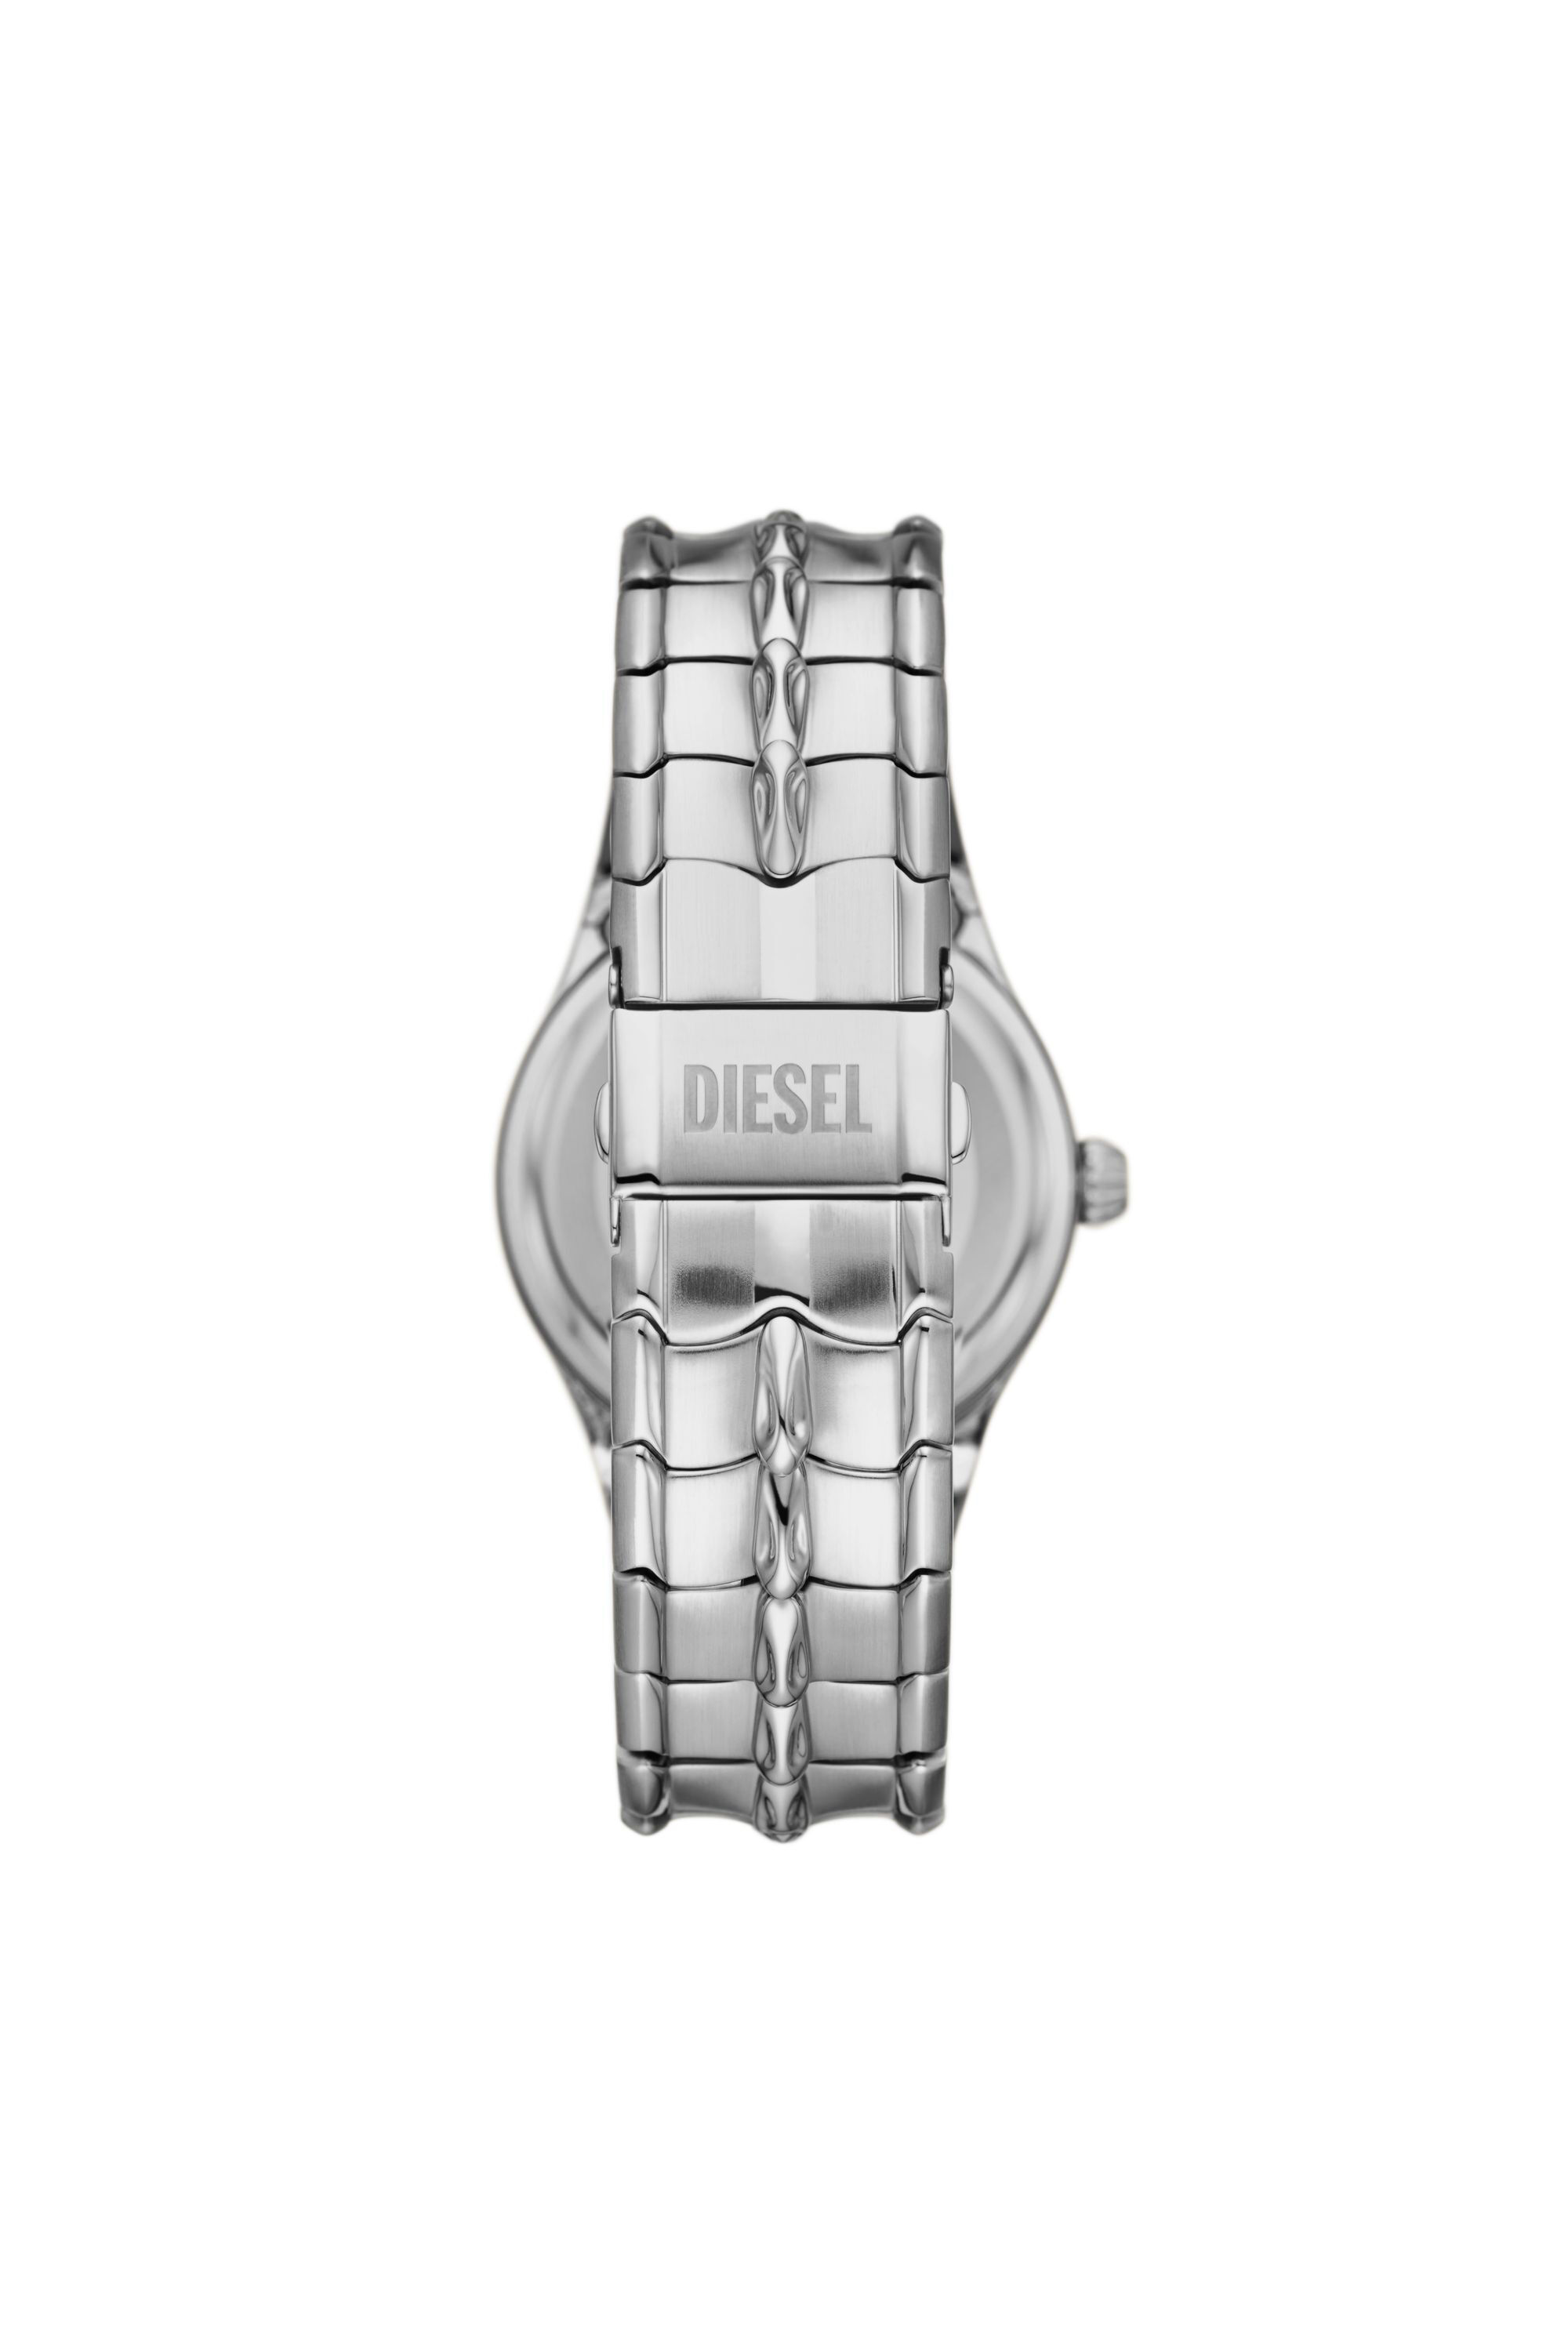 Diesel - DZ2200, Silver - Image 2